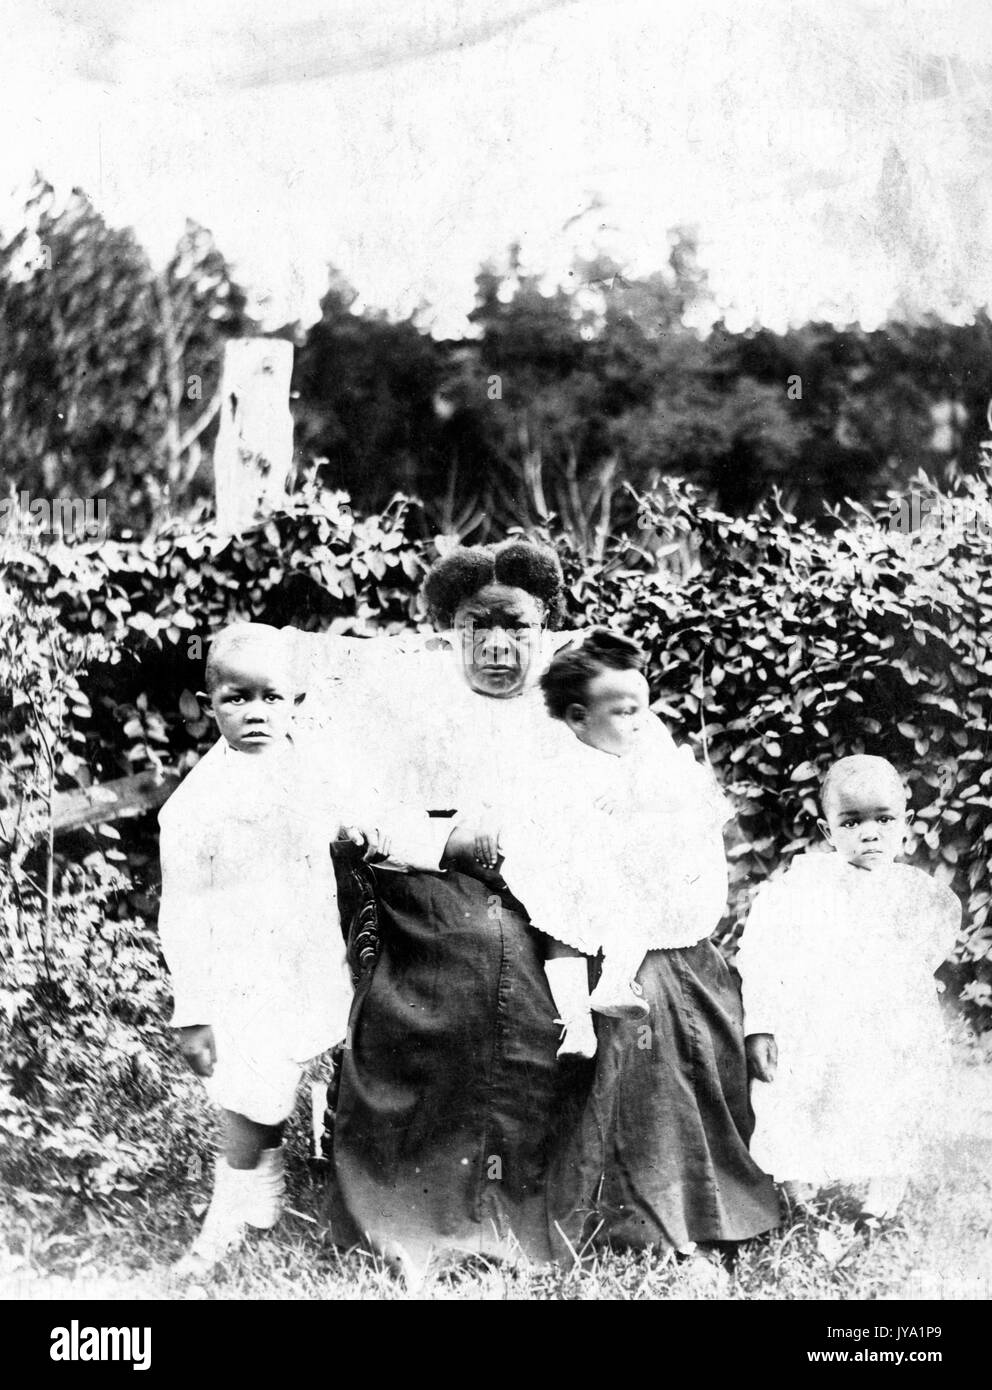 Die afroamerikanische Großmutter sitzt und hält eines von drei Enkelkindern, die anderen beiden Enkelkinder sind an ihrer Seite, sie sitzen und stehen vor Gebüsch, die Kinder tragen helle Outfits und die Großmutter trägt ein helles Hemd und einen dunklen langen Rock, 1920. Stockfoto